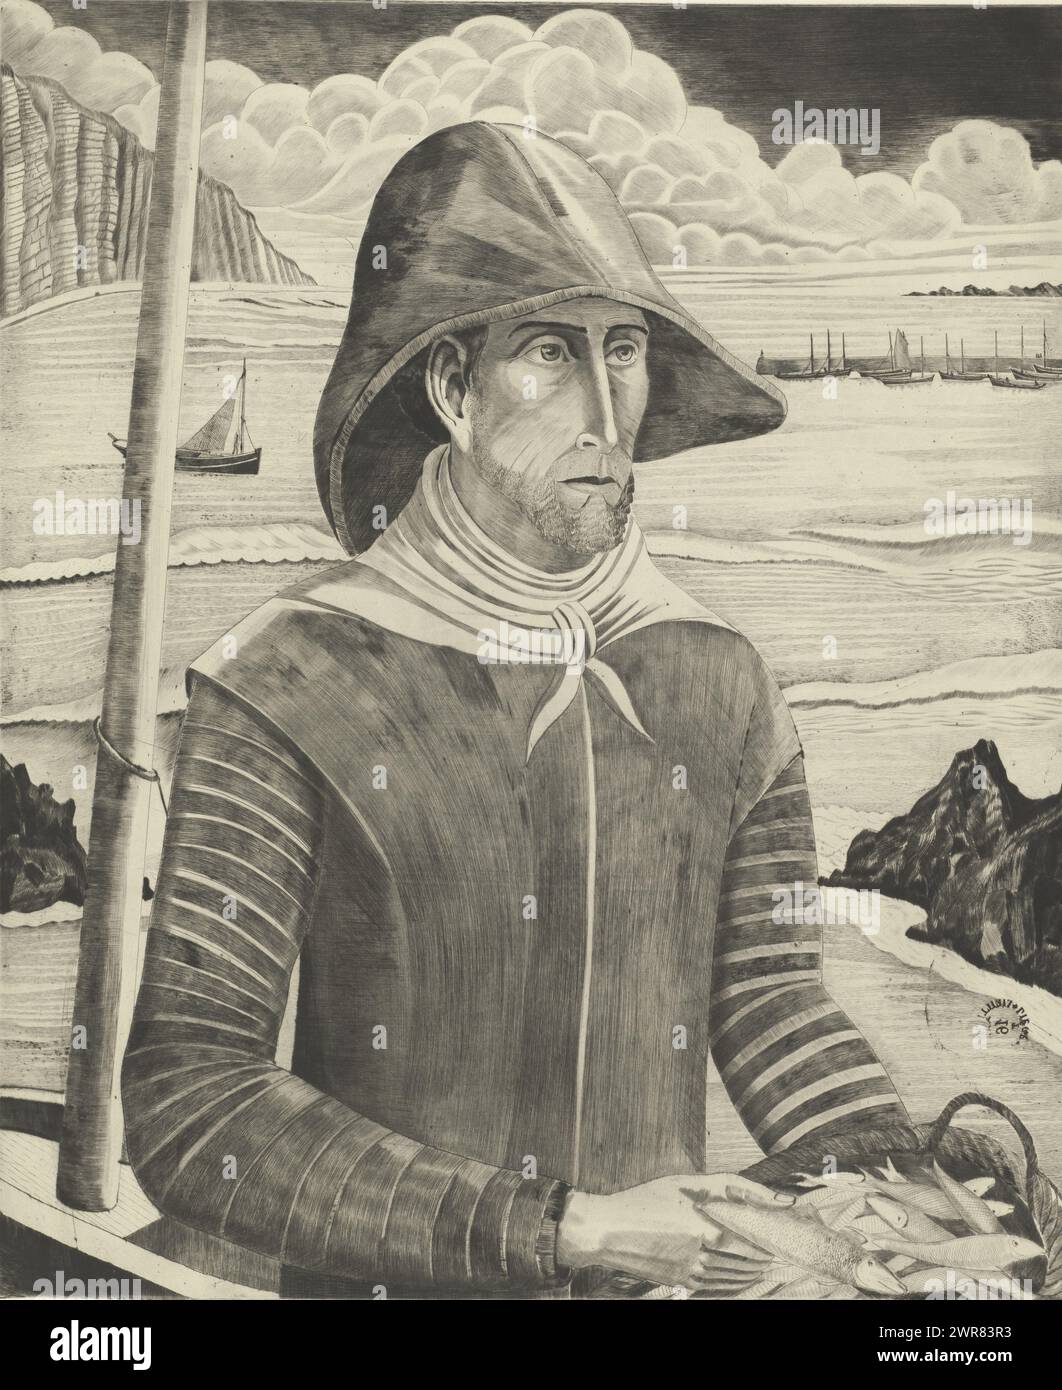 Pescador bretón, Pêcheur Breton II (título original), Un hombre con un cabrito y un sombrero lleva una cesta de pescado en una playa. Un acantilado de mar en el fondo. En este tercer estado de la impresión, se han añadido barcos de pesca en el mar., imprenta: Lodewijk Schelfhout, (firmado por el artista), impresora: Roeloffzen & Hübner, 1929, papel, punta seca, altura 595 mm x ancho 490 mm, impresión Foto de stock